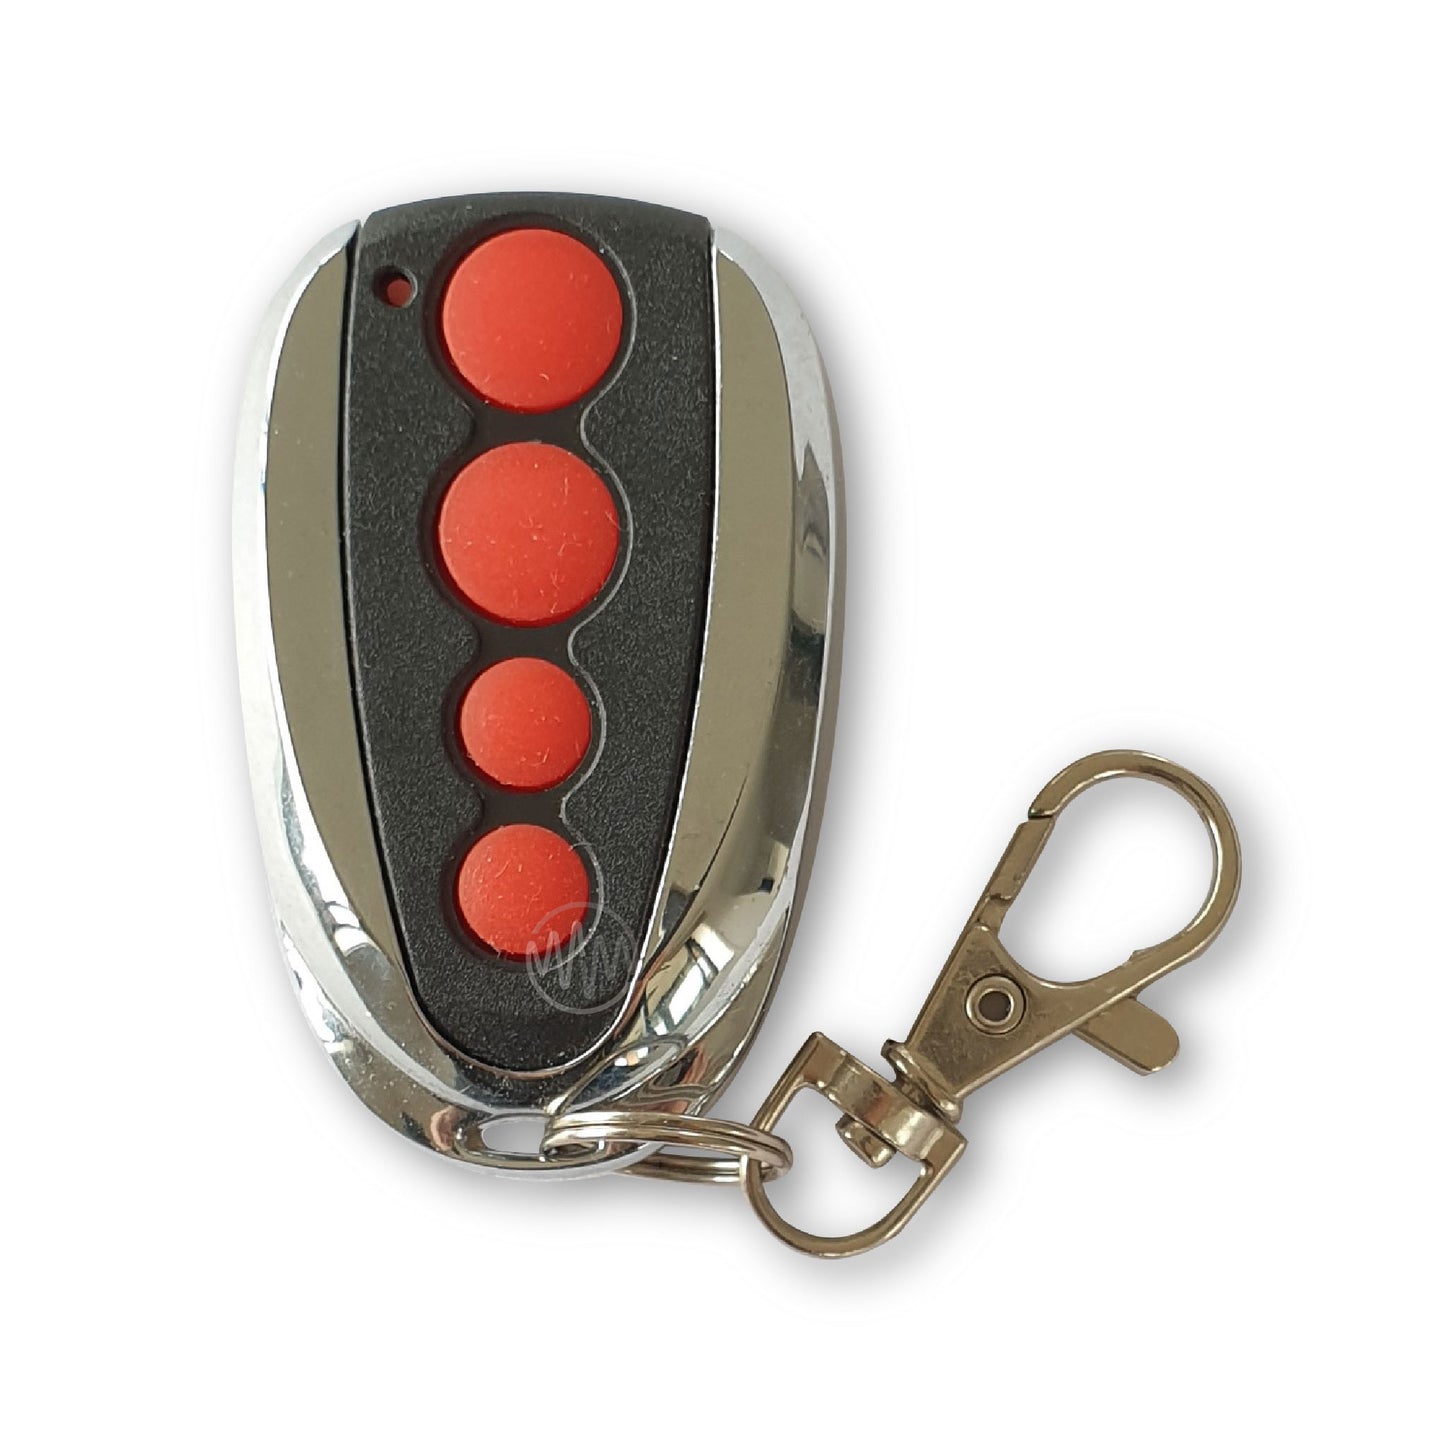 ACDC Red Button Garage Door Remote